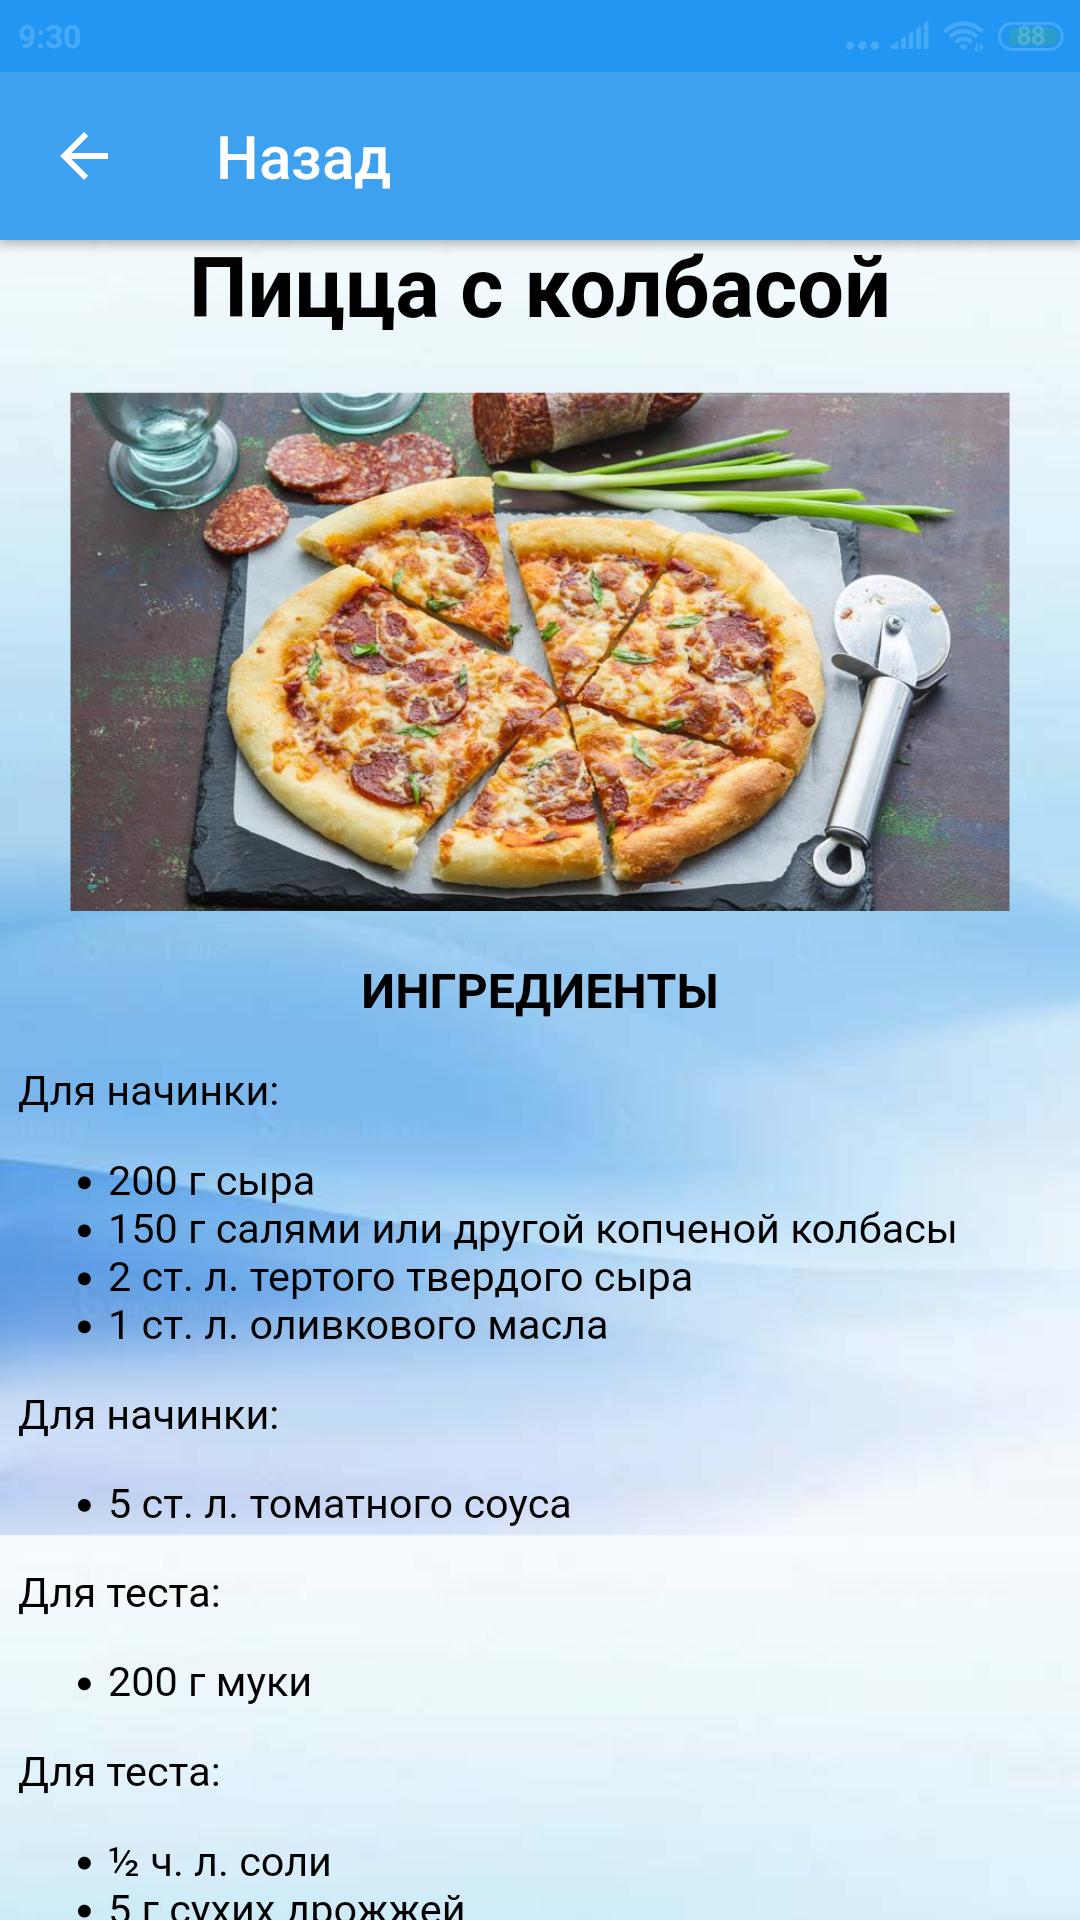 этапы рецепта приготовления пиццы фото 96